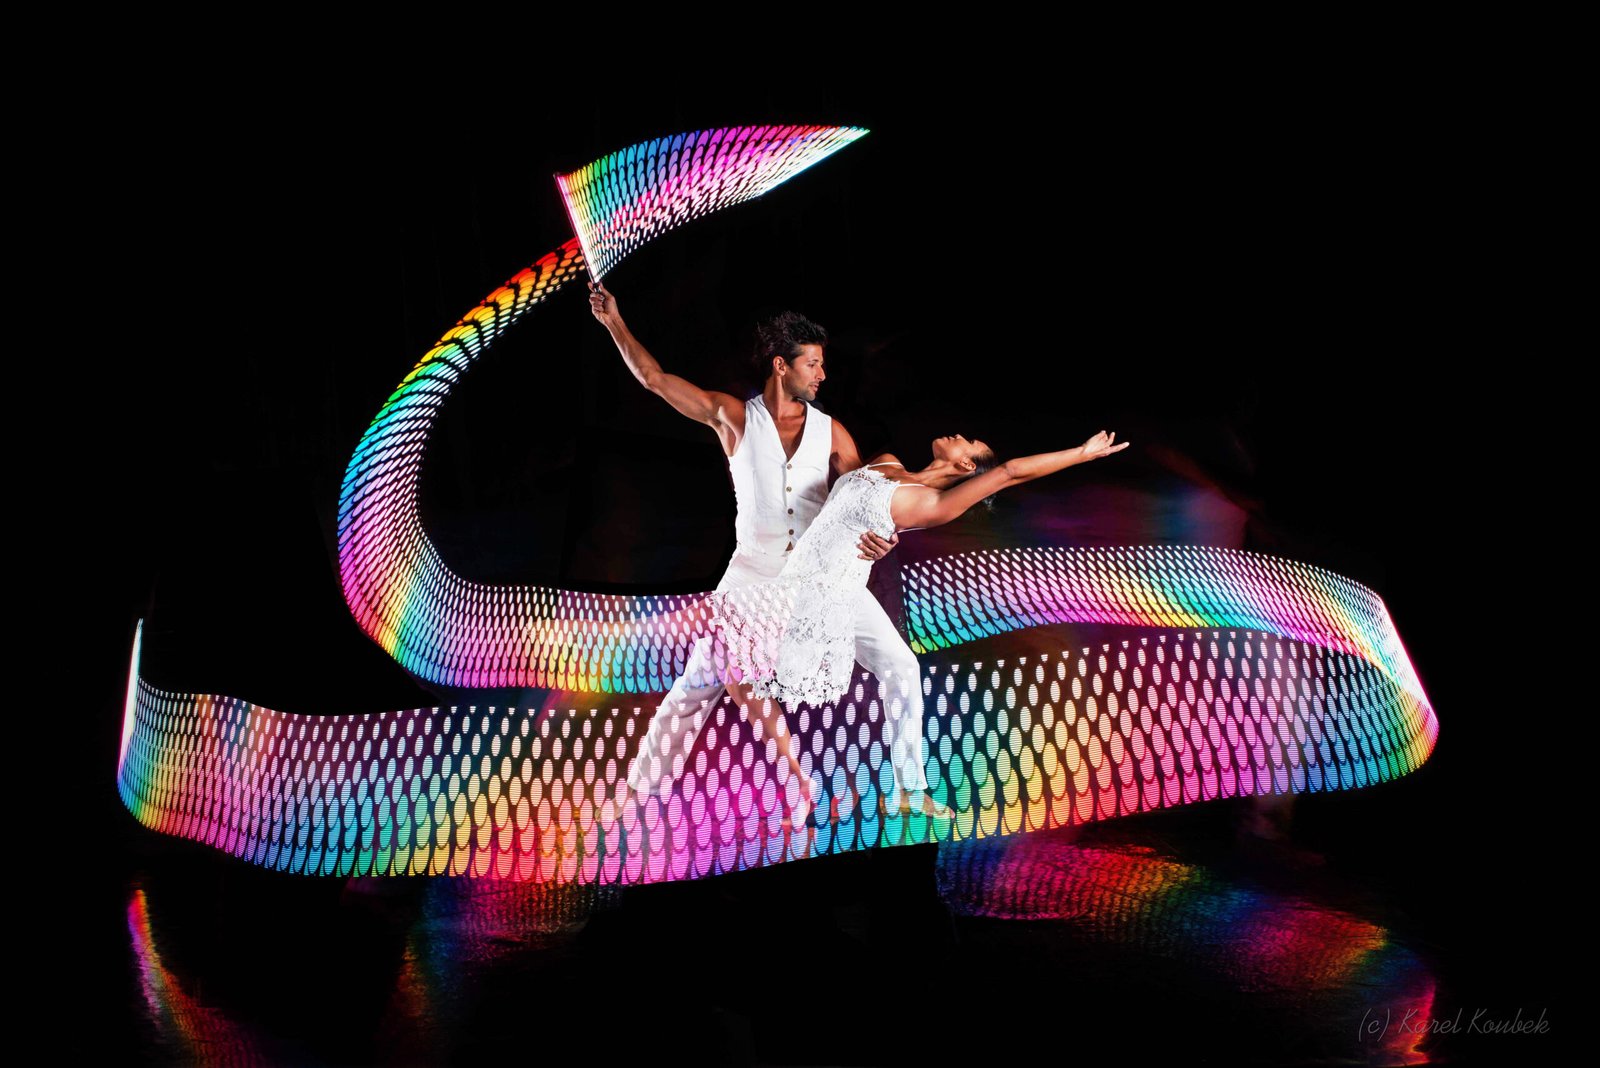 Spectacle lumineux LED avec jongleurs lumineux LED dans un acrobates aériens à Paris Île-de-France pour les spectacle évènementiel